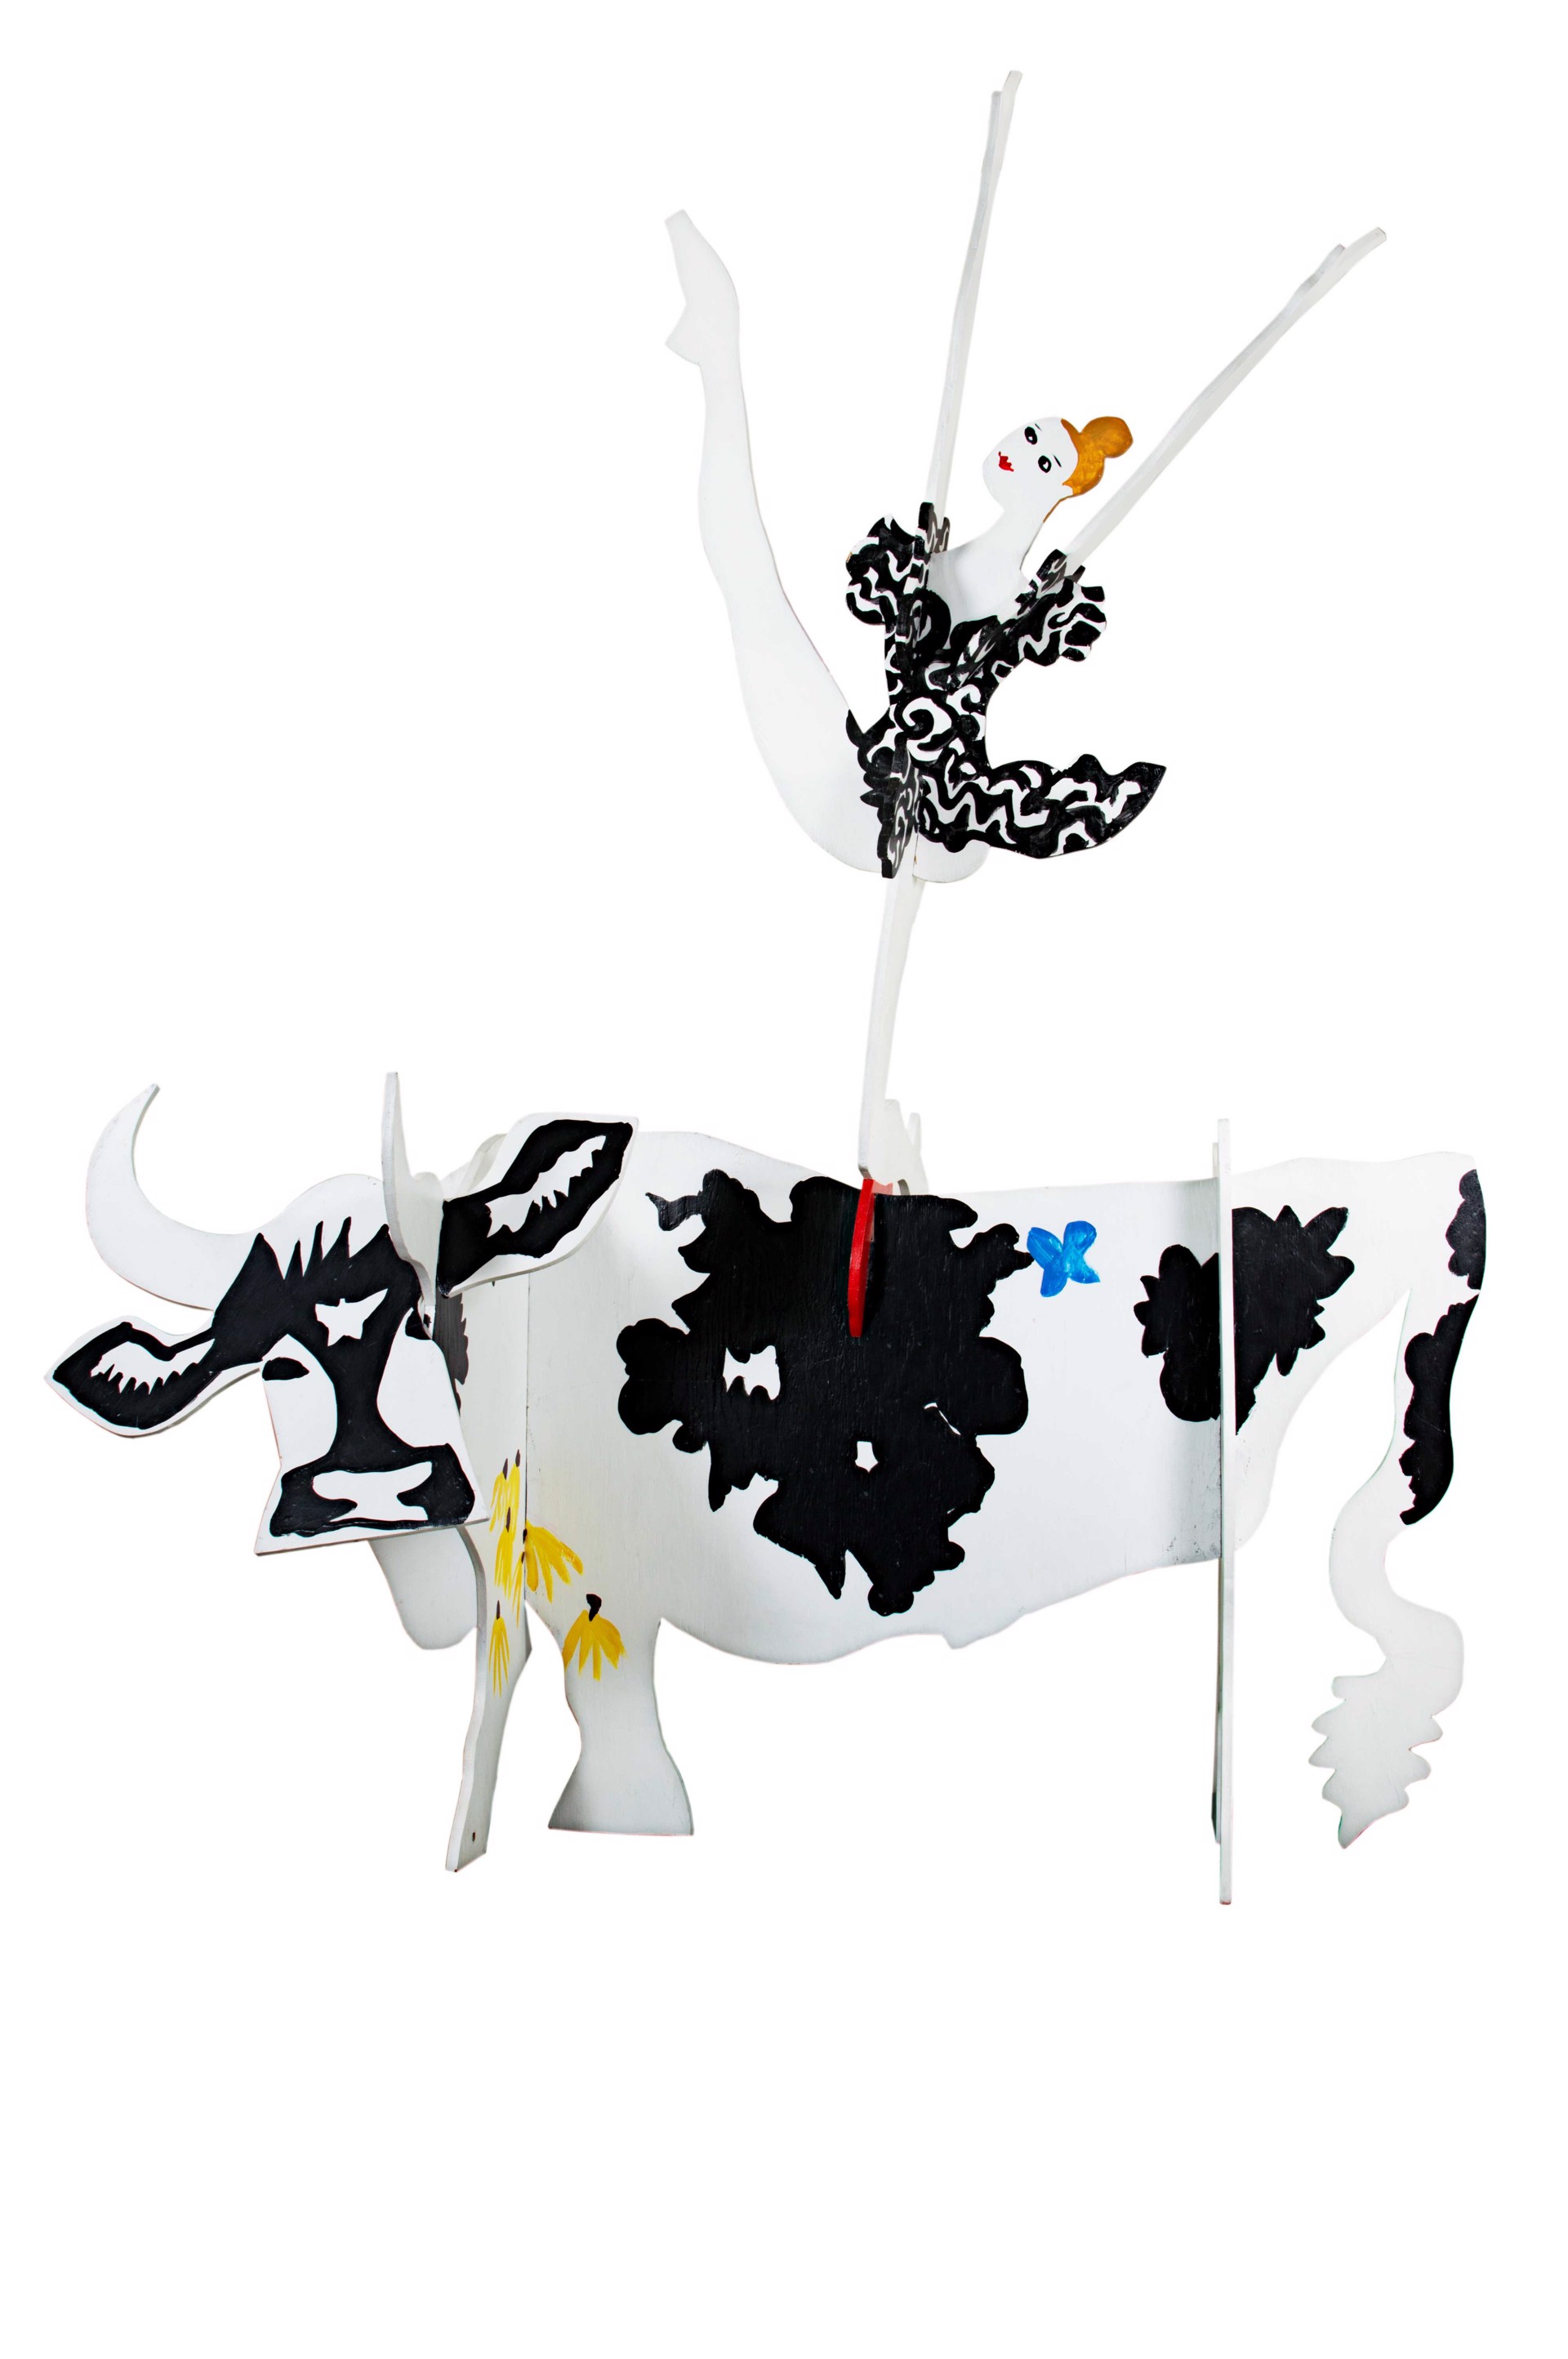 Cow and Ballerina by Schomer Lichtner